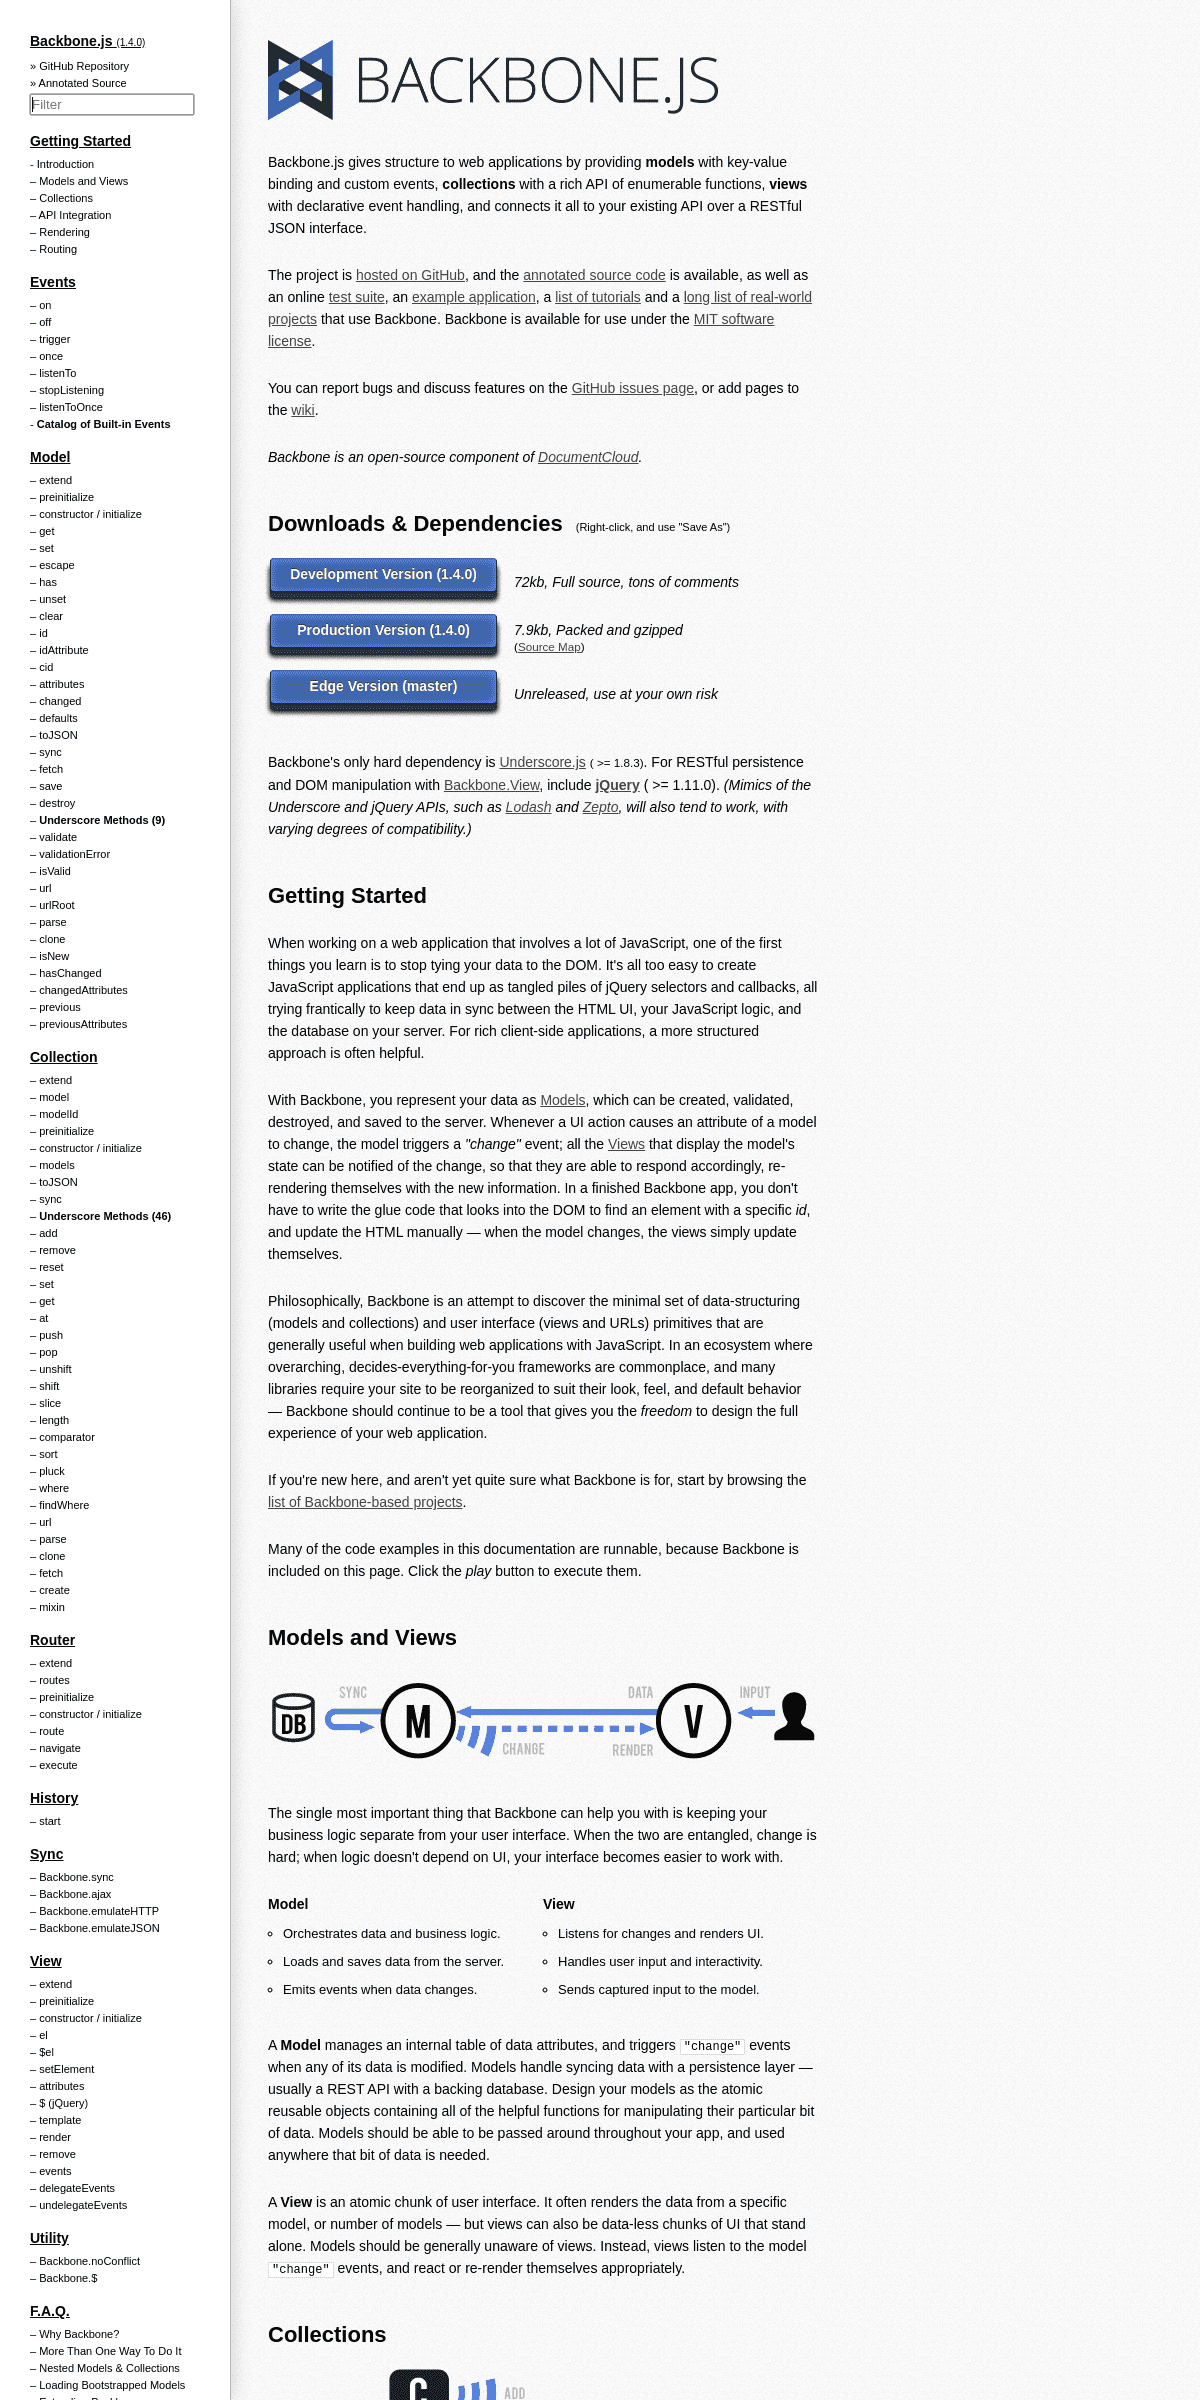 A complete backup of backbonejs.org